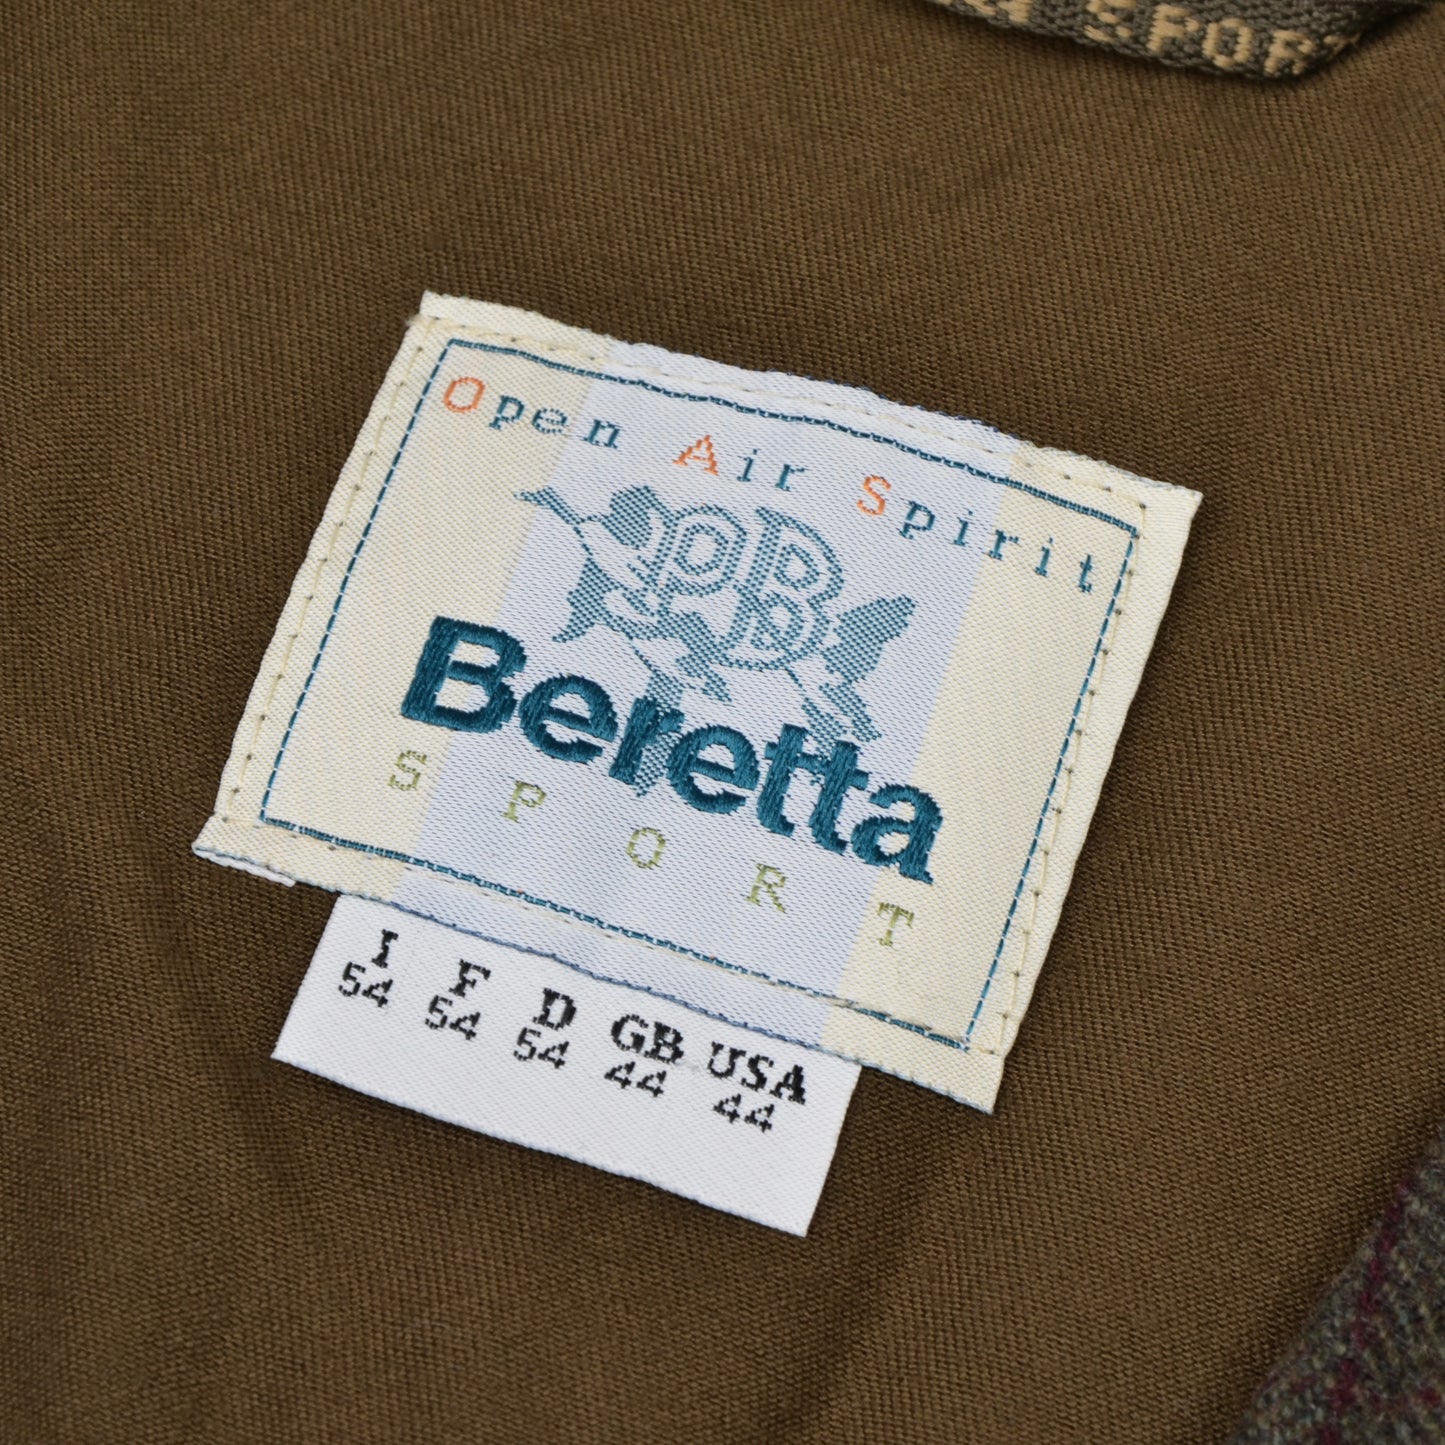 Beretta Sport Tweed Schießweste Größe 54 - Grün